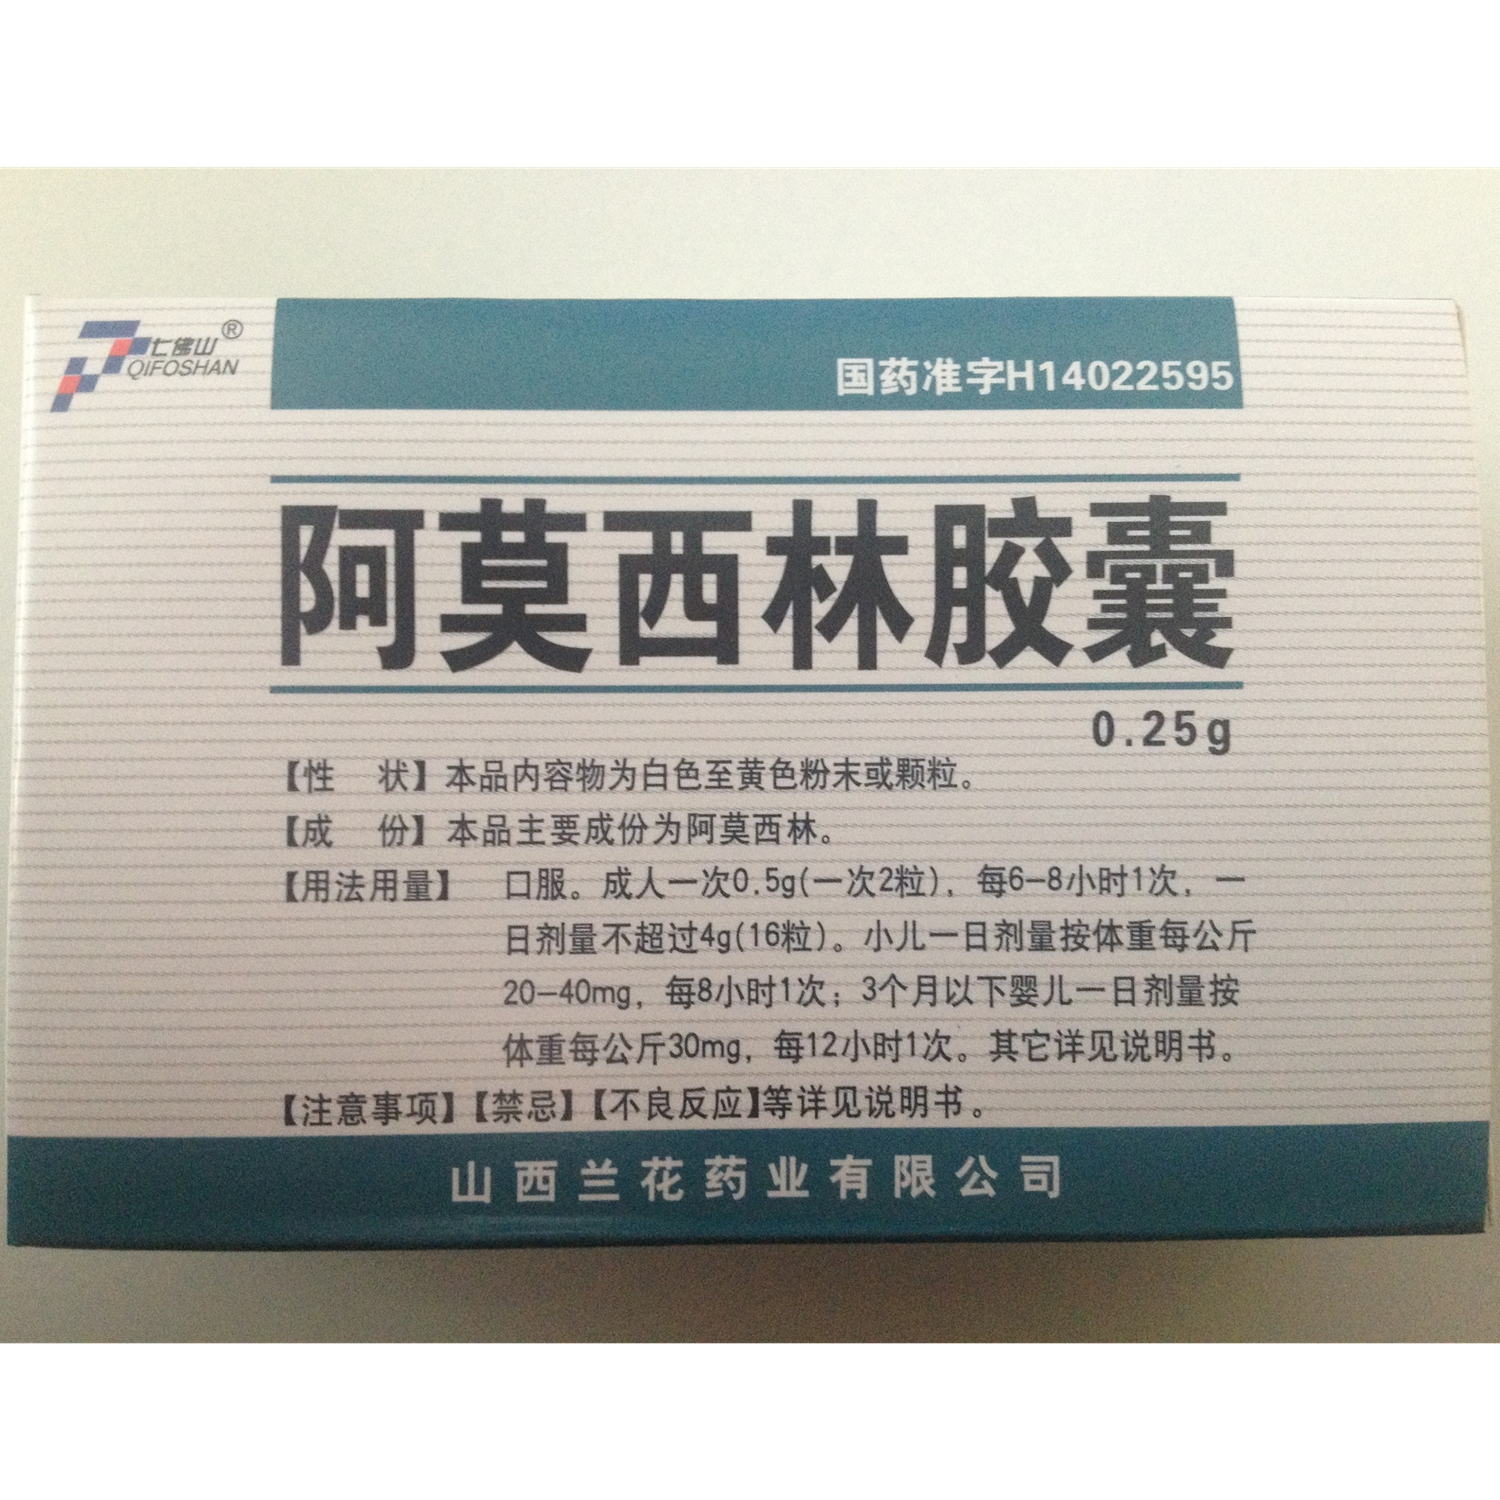 【兰花药业】阿莫西林胶囊-山西兰花药业有限公司